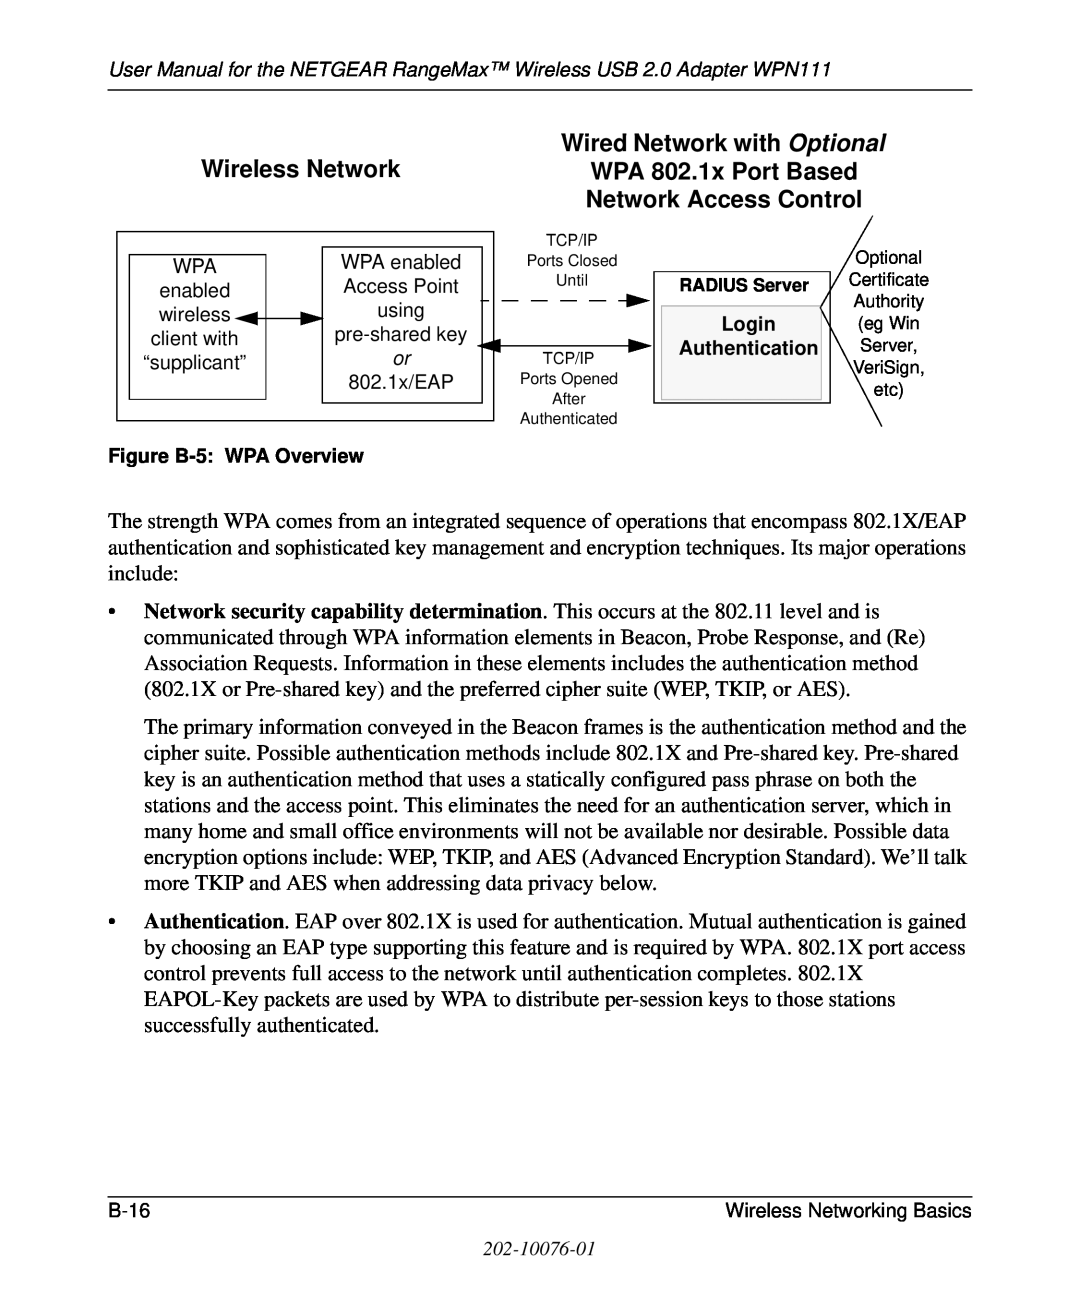 NETGEAR WPN111 user manual Wireless Network, Figure B-5 WPA Overview, Login Authentication 